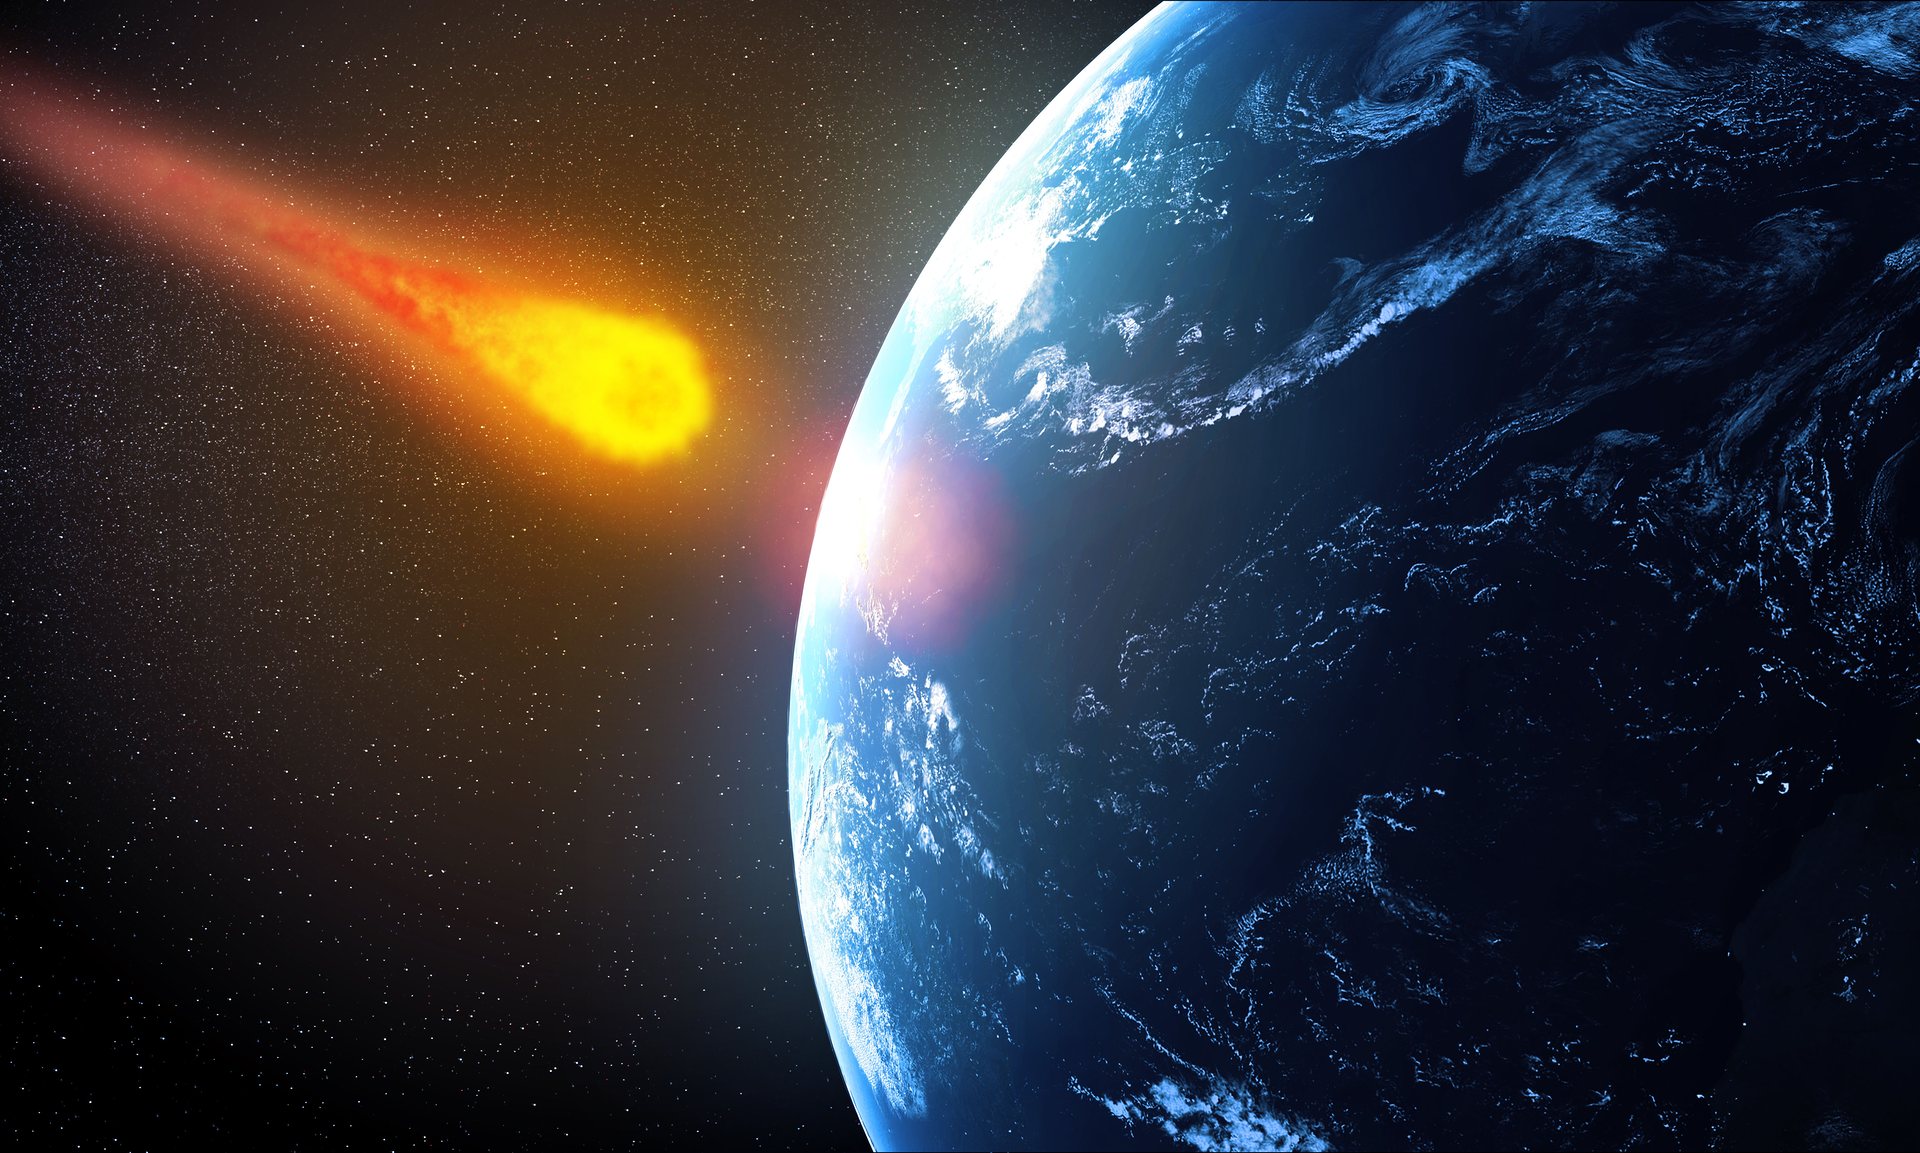 Η NASA προειδοποιεί: Είμαστε απροετοίμαστοι να αντιμετωπίσουμε αιφνιδιαστική απειλή αστεροειδούς